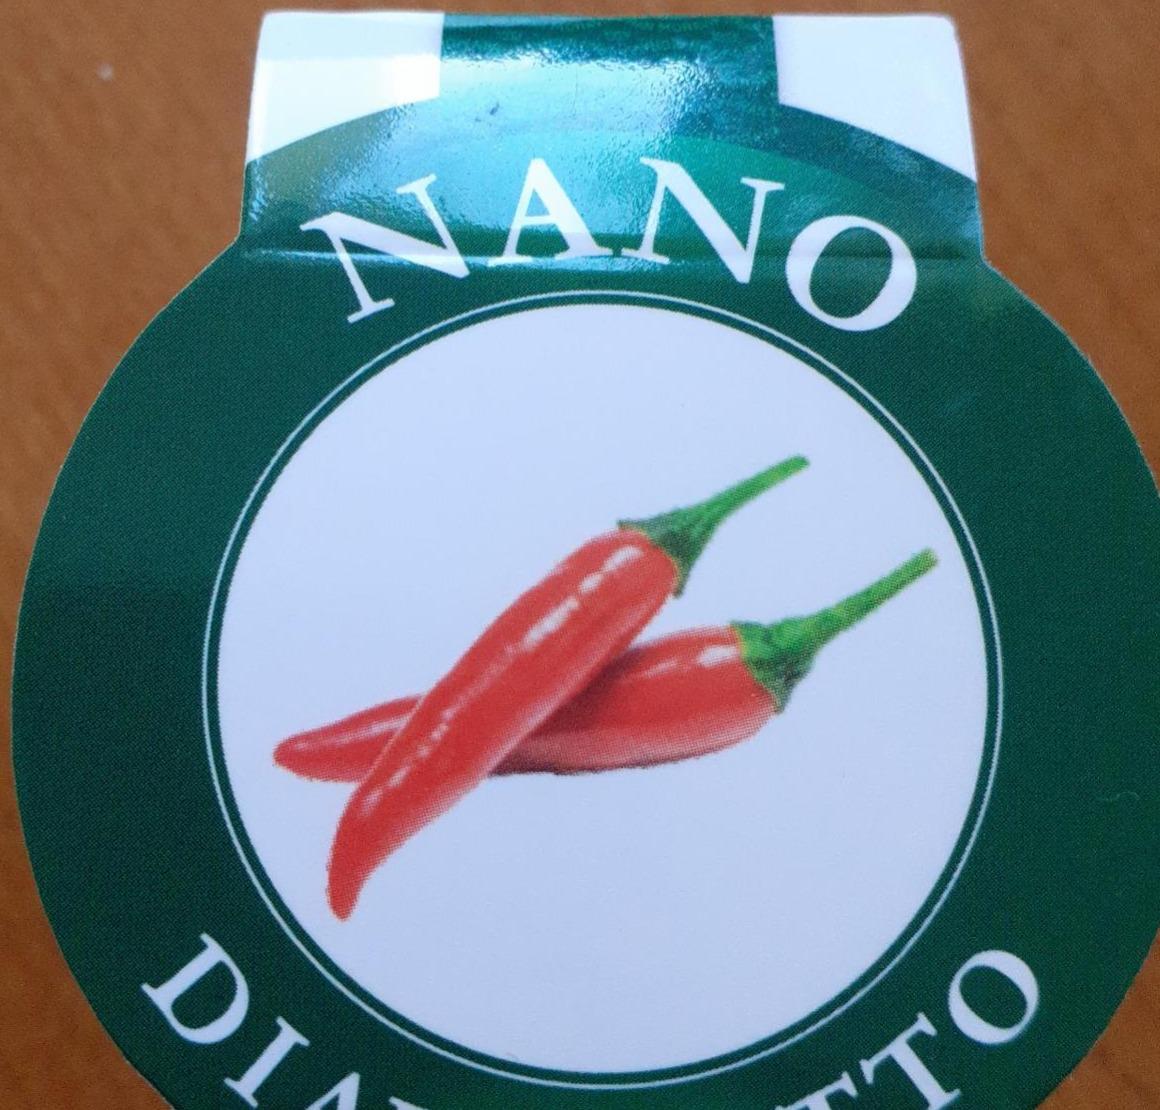 Fotografie - Nano Diavoletto přírodní sýr s chilli papričkou